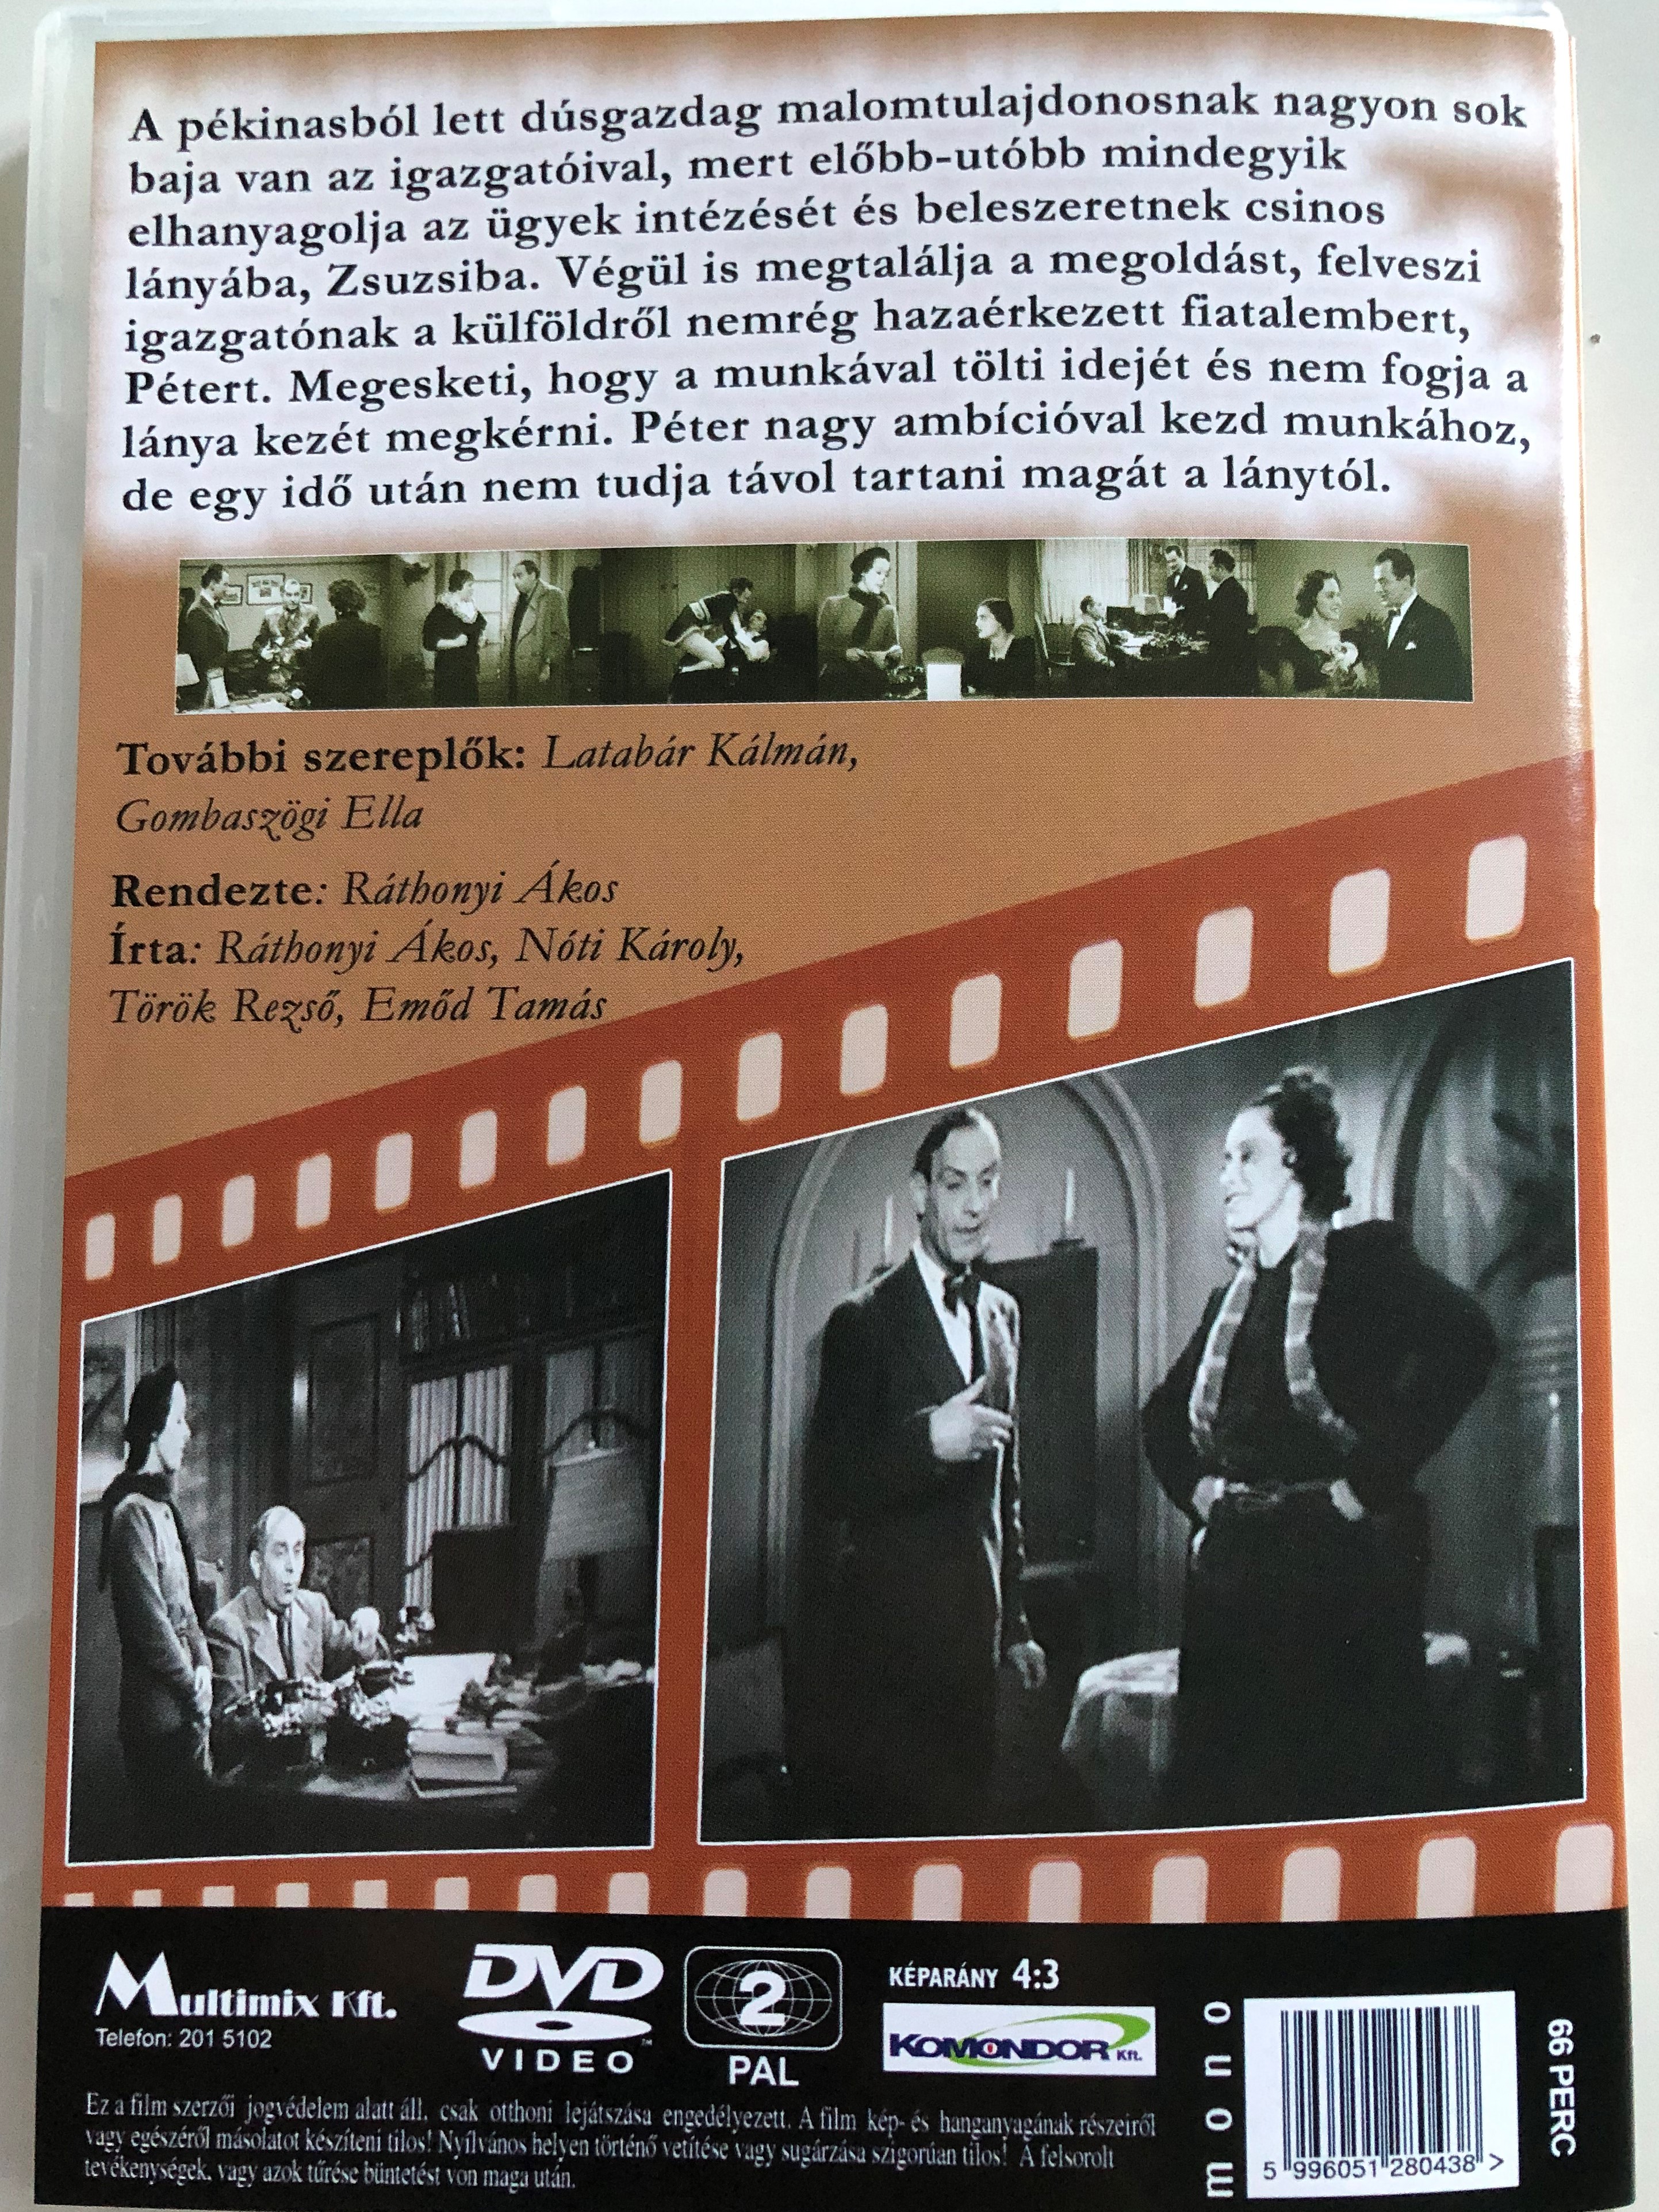 pay-nagys-d-dvd-1937-fizessen-nagys-d-directed-by-r-thonyi-kos-starring-kabos-gyula-j-vor-p-l-mur-ti-lili-b-w-hungarian-classic-2-.jpg